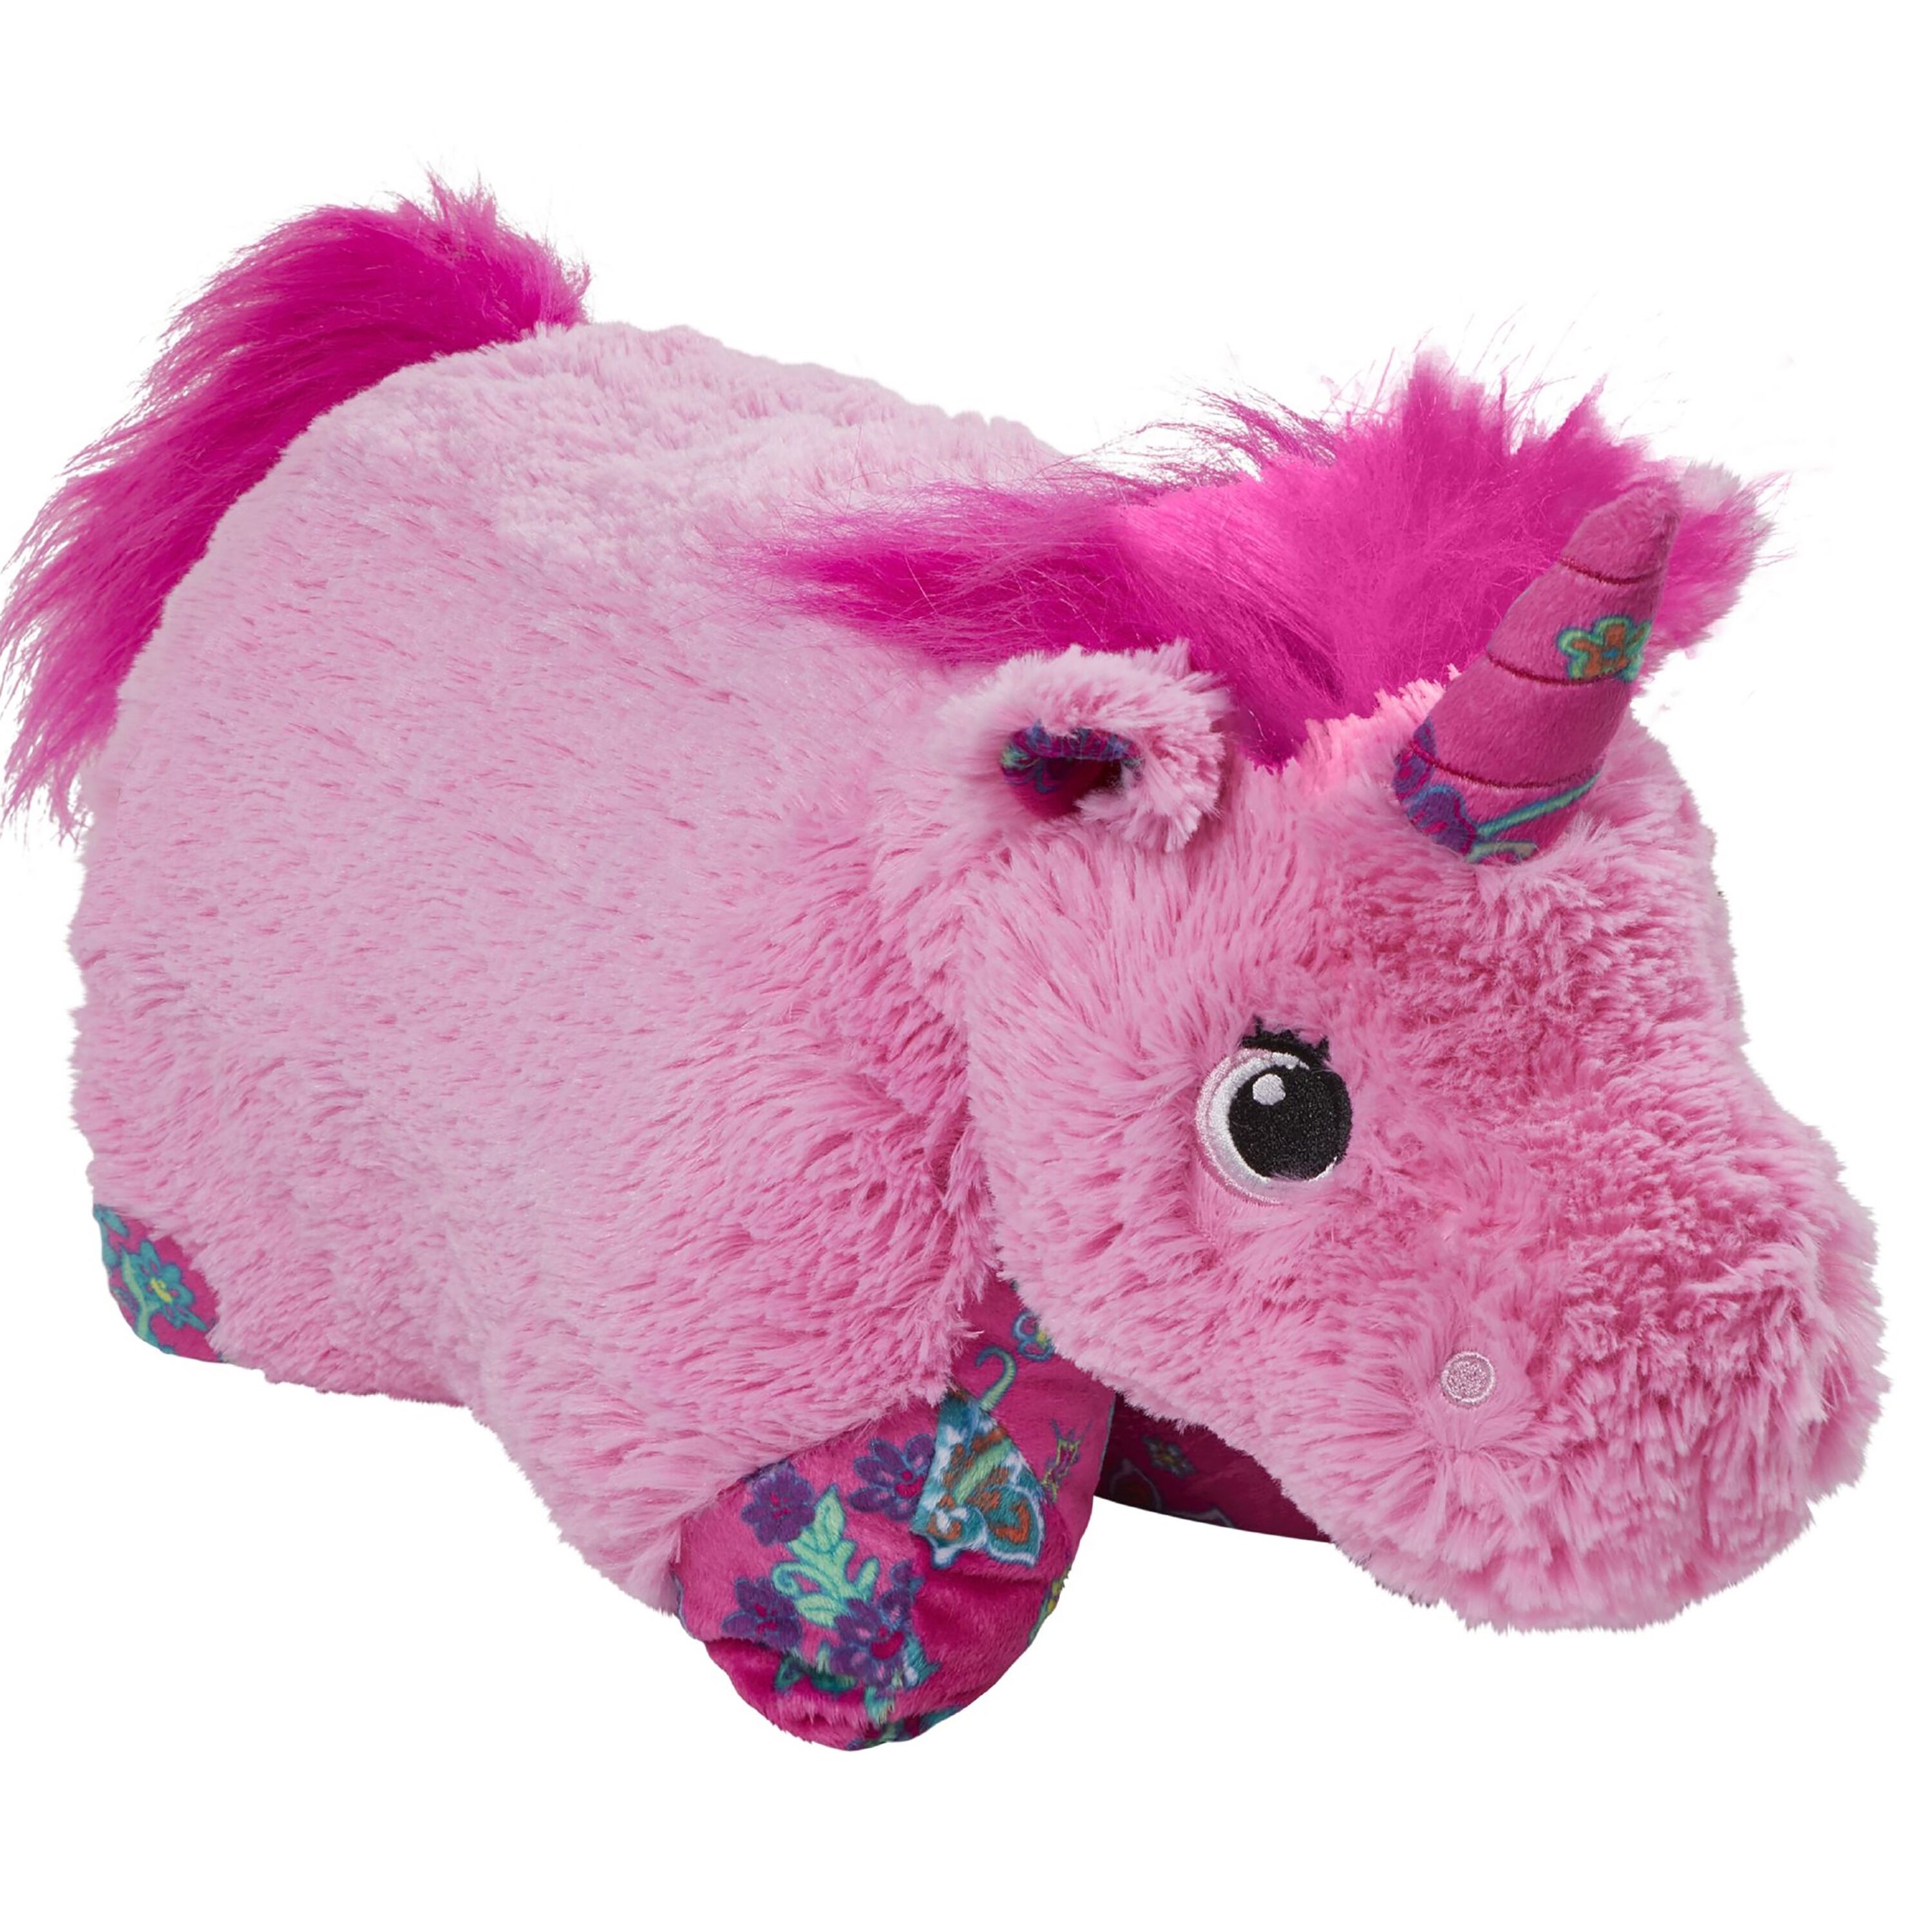 Pillow Pets 18" Pink Unicorn Stuffed Animal Plush Toy Pillow Pet - image 1 of 6